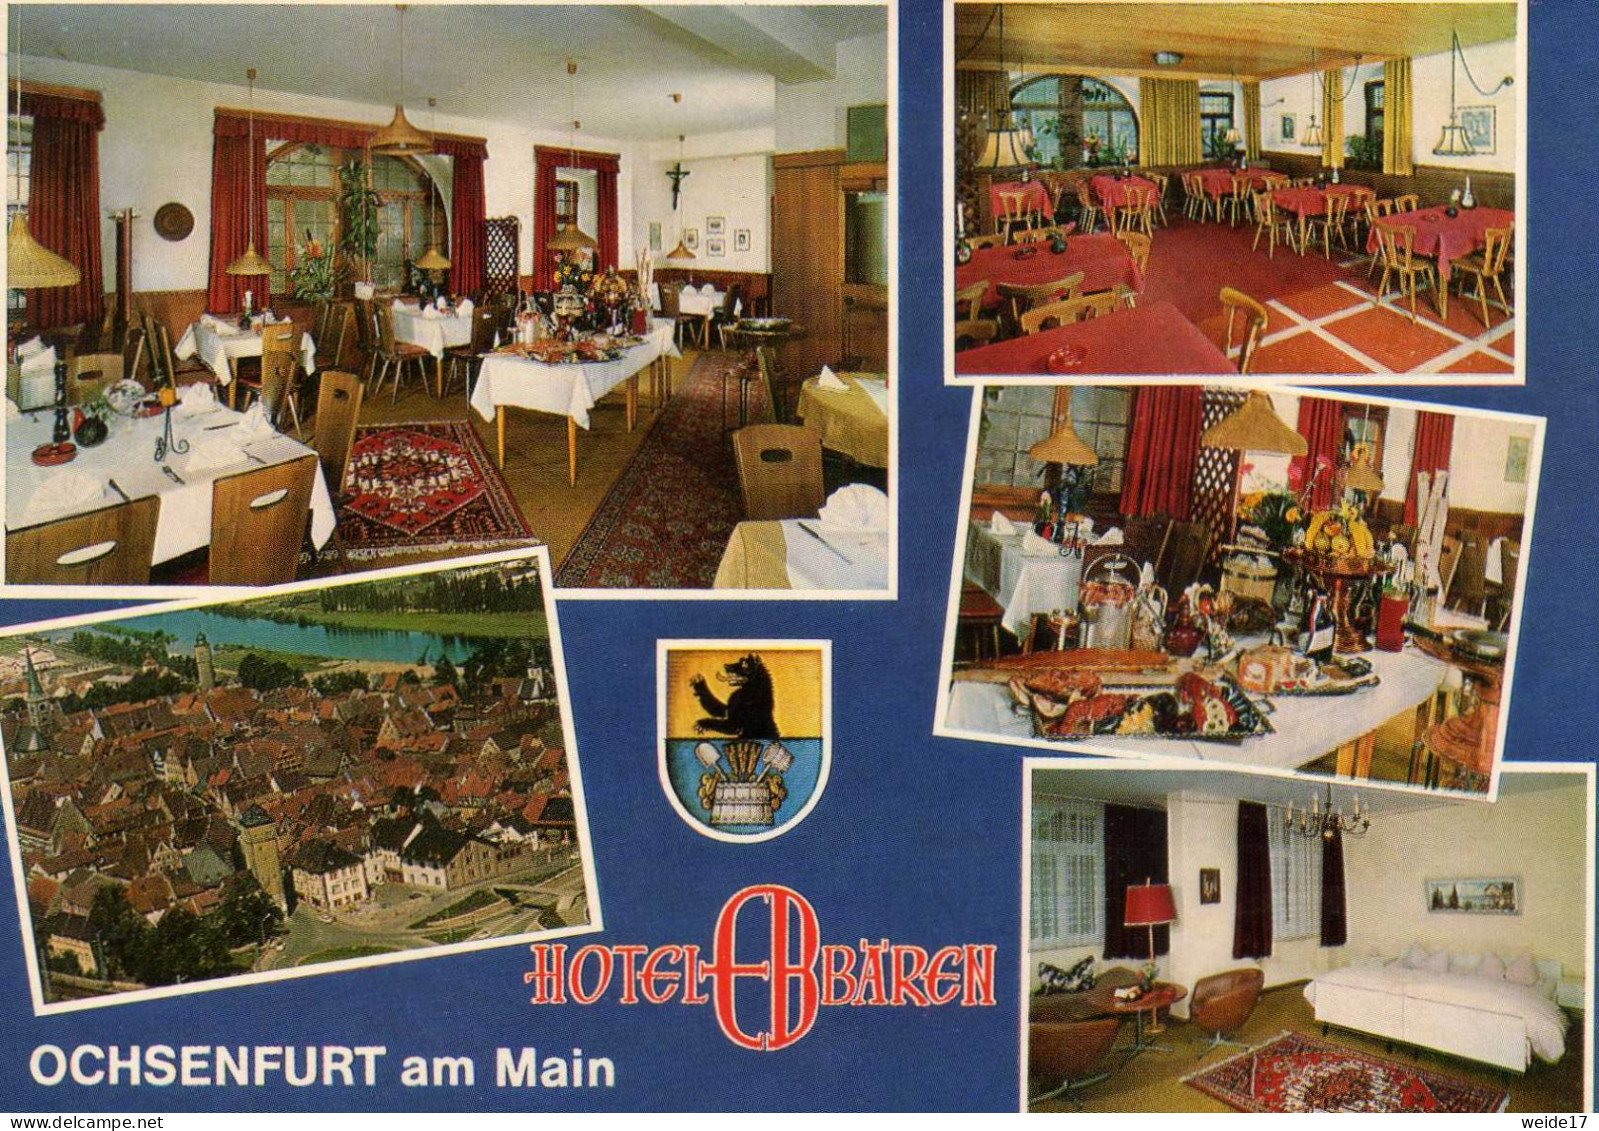 05344 - OCHSENFURT Am Main - MBK Vom Hotel BÄREN - Ochsenfurt